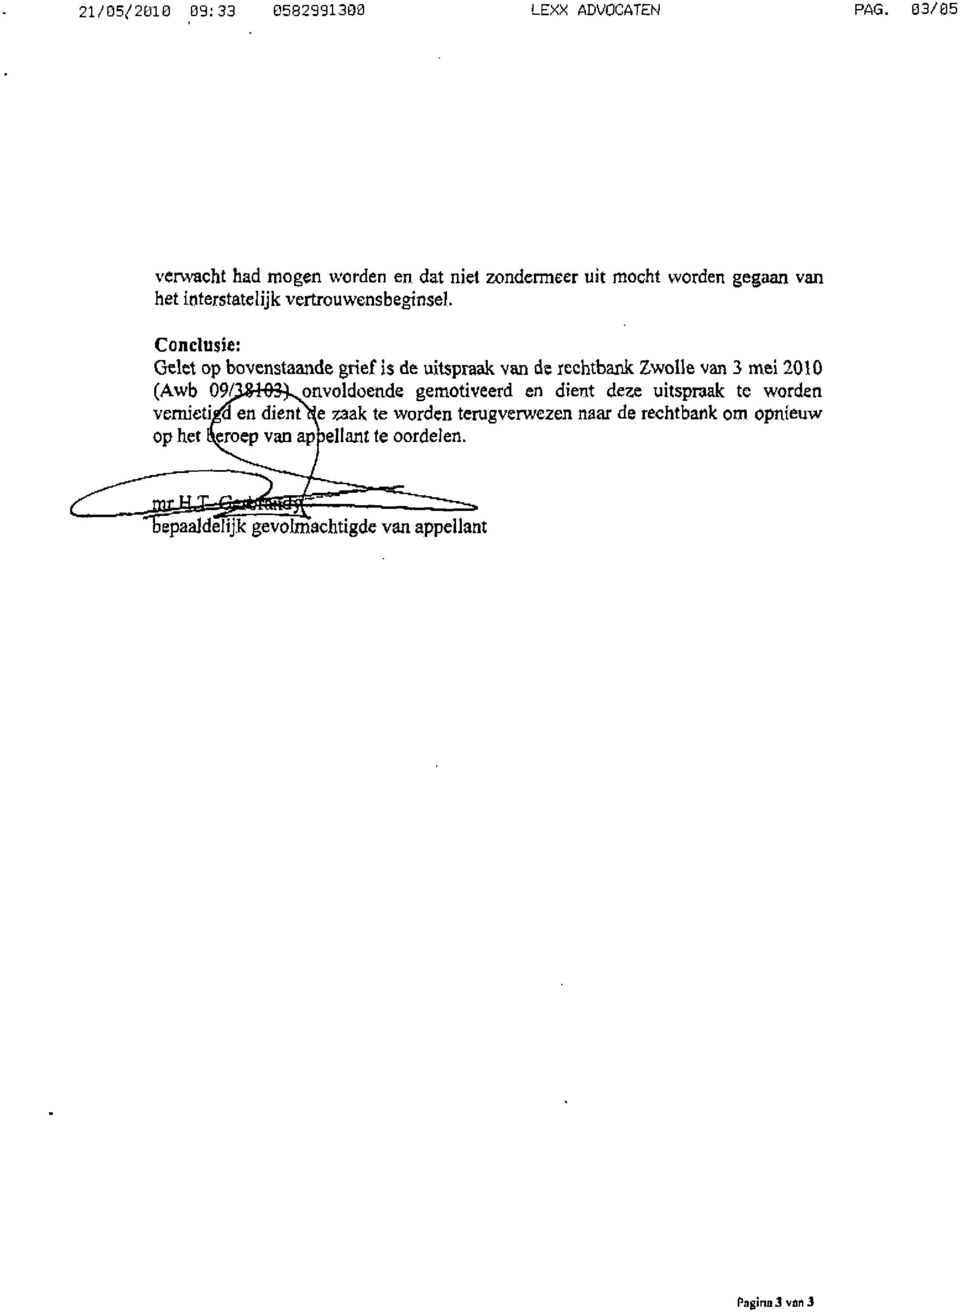 Conclusie: Gelet op bovenstaande grief is de uitspraak van de rechtbank Zwolle van 3 mei 2010 (Awb OM&H&Lonvoldoende